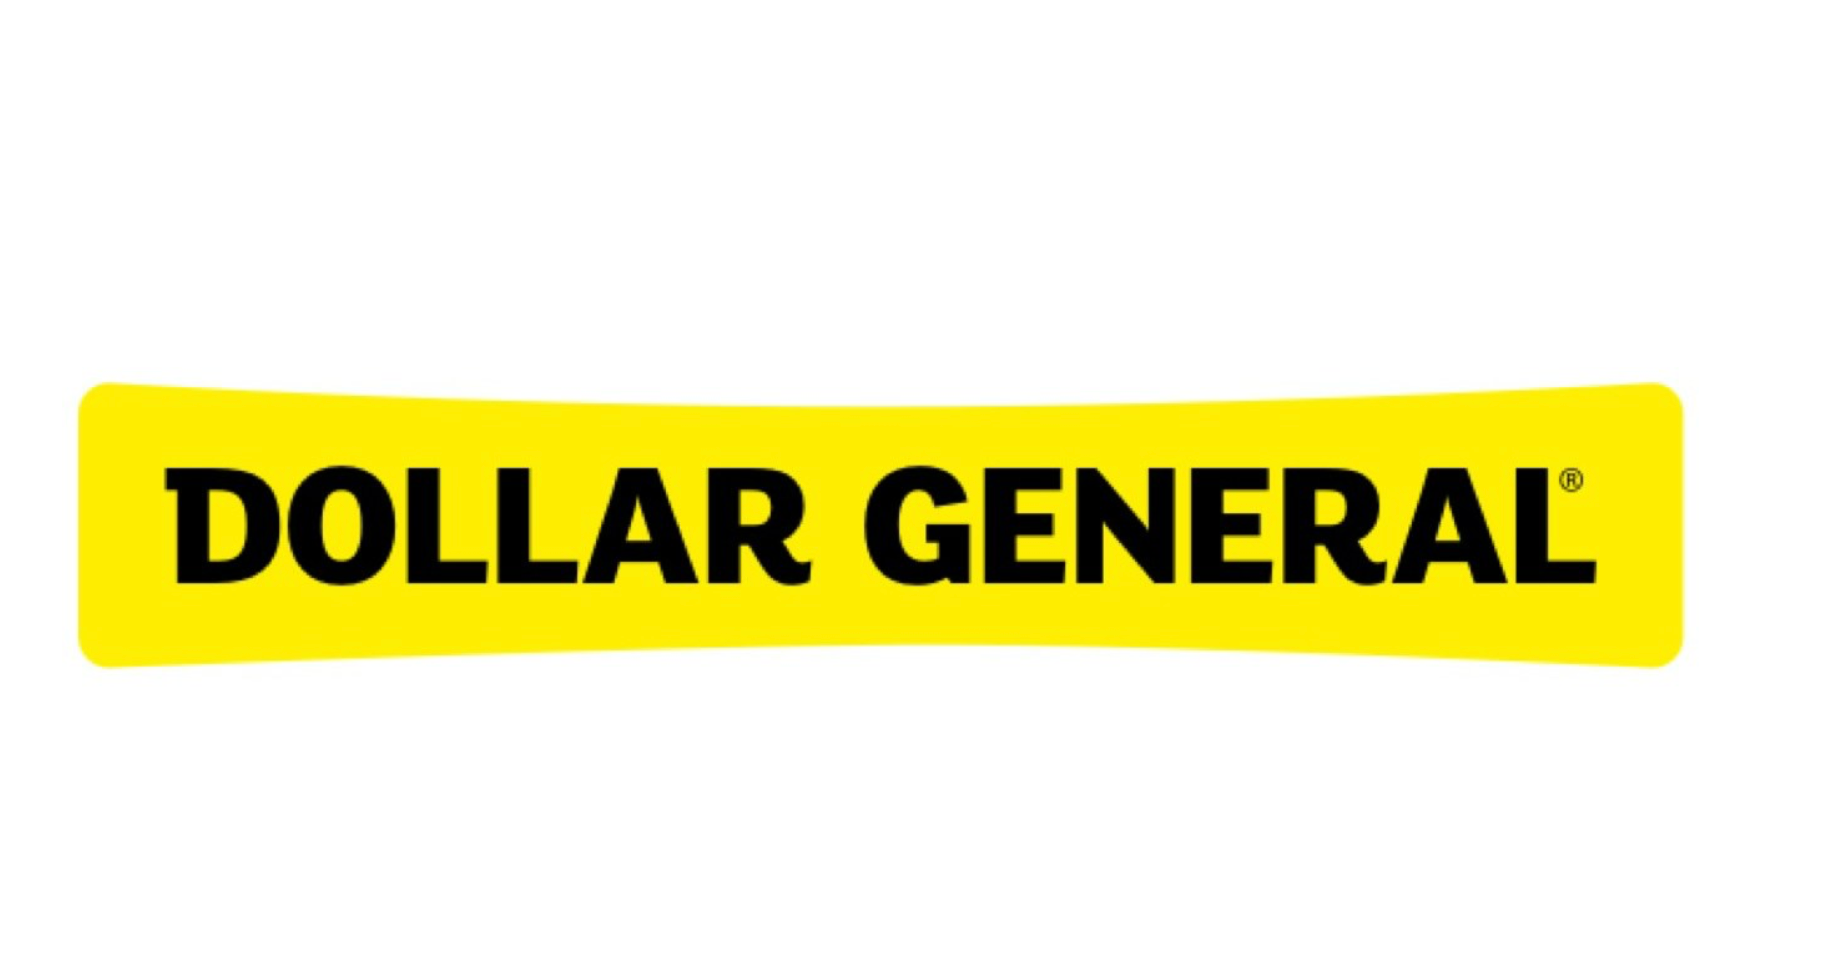 Dollar General Retailer